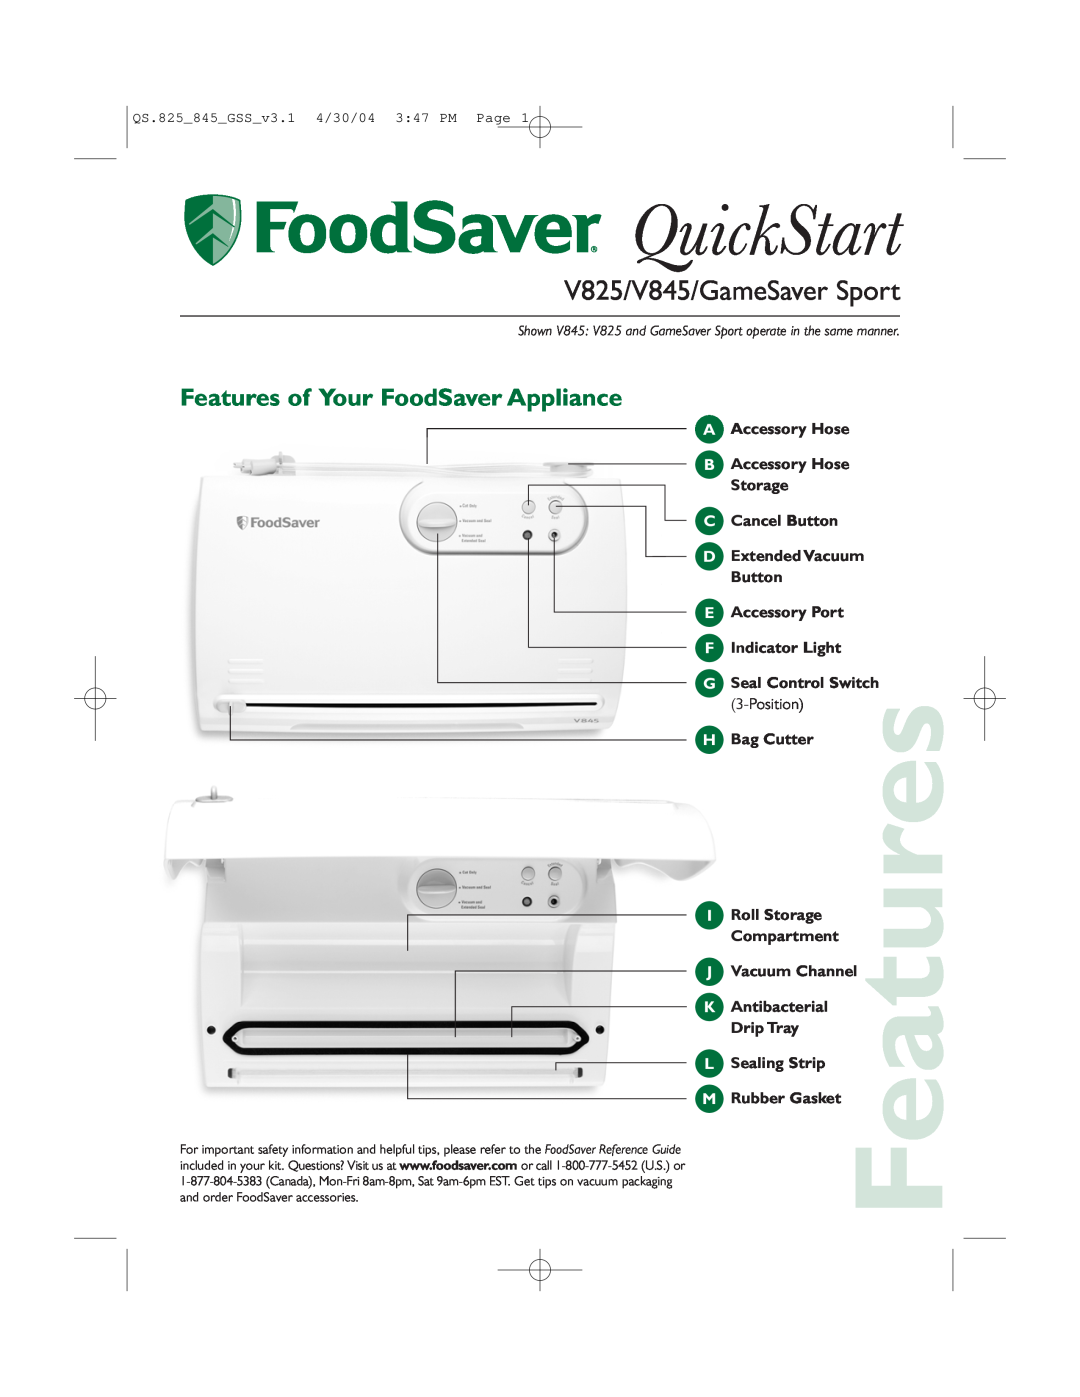 FoodSaver v825 quick start Features of Your FoodSaver Appliance, QuickStart, V825/V845/GameSaver Sport 